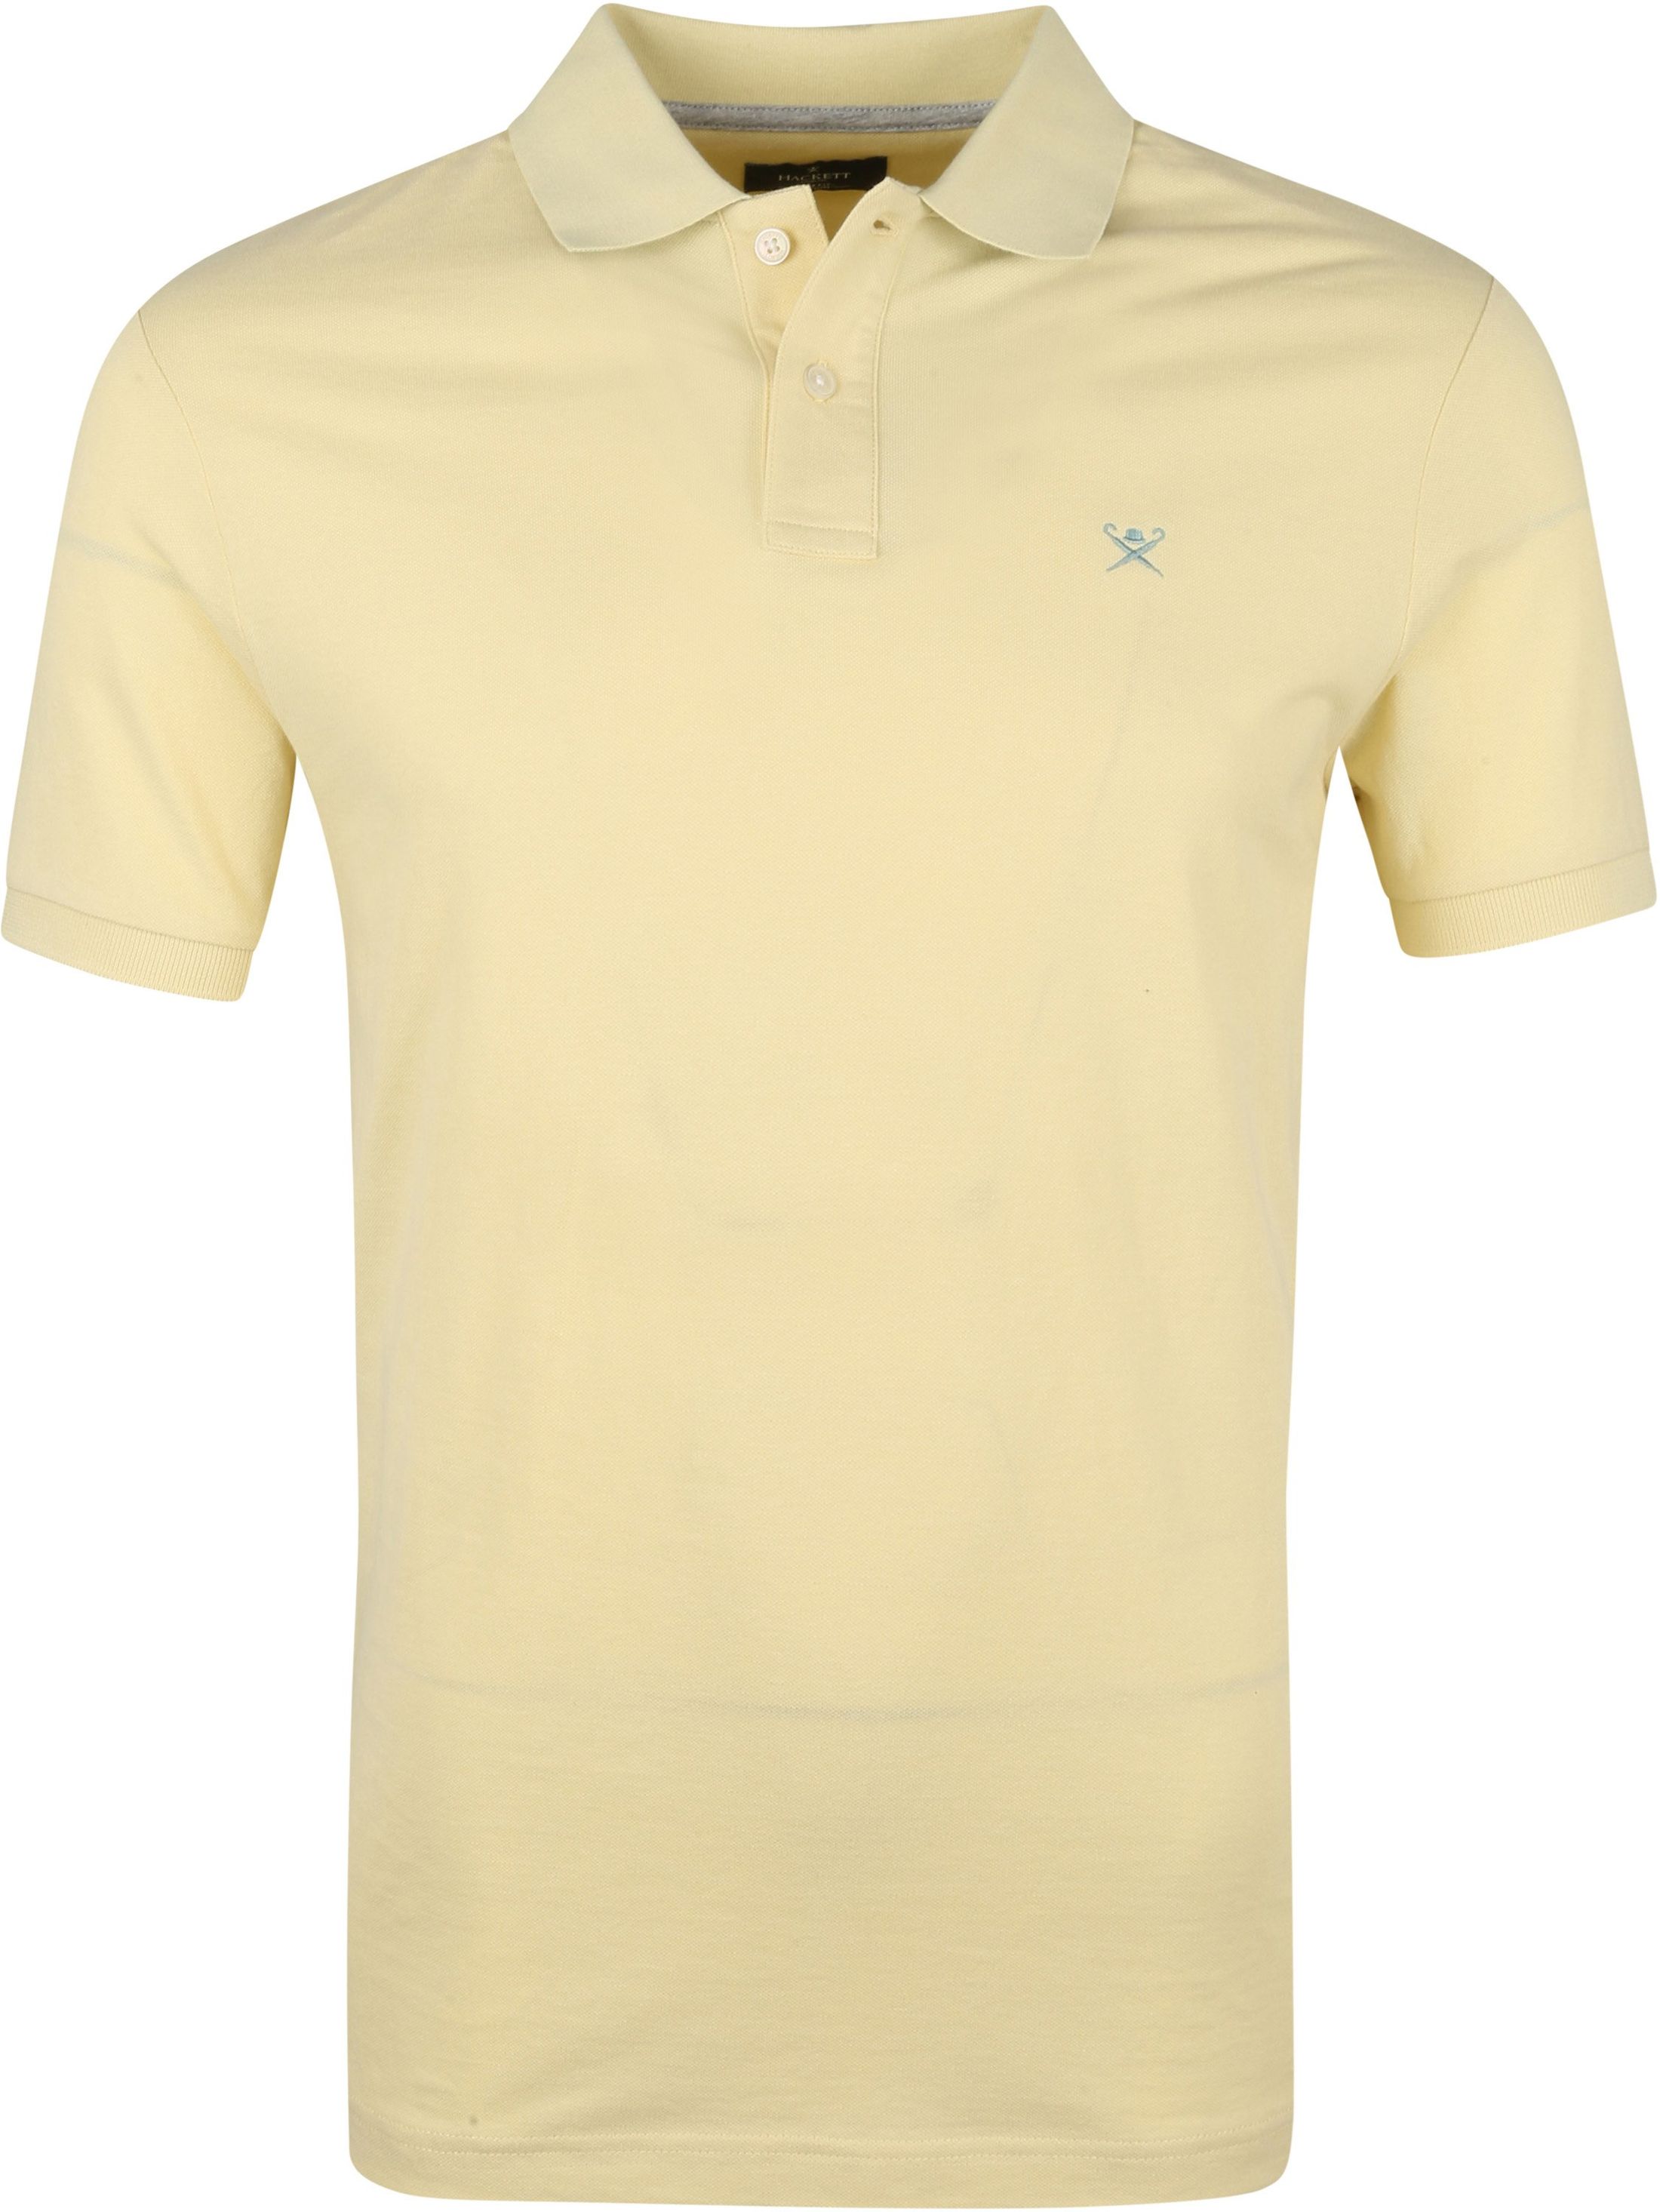 Hackett Polo Shirt Chambry Yellow size L